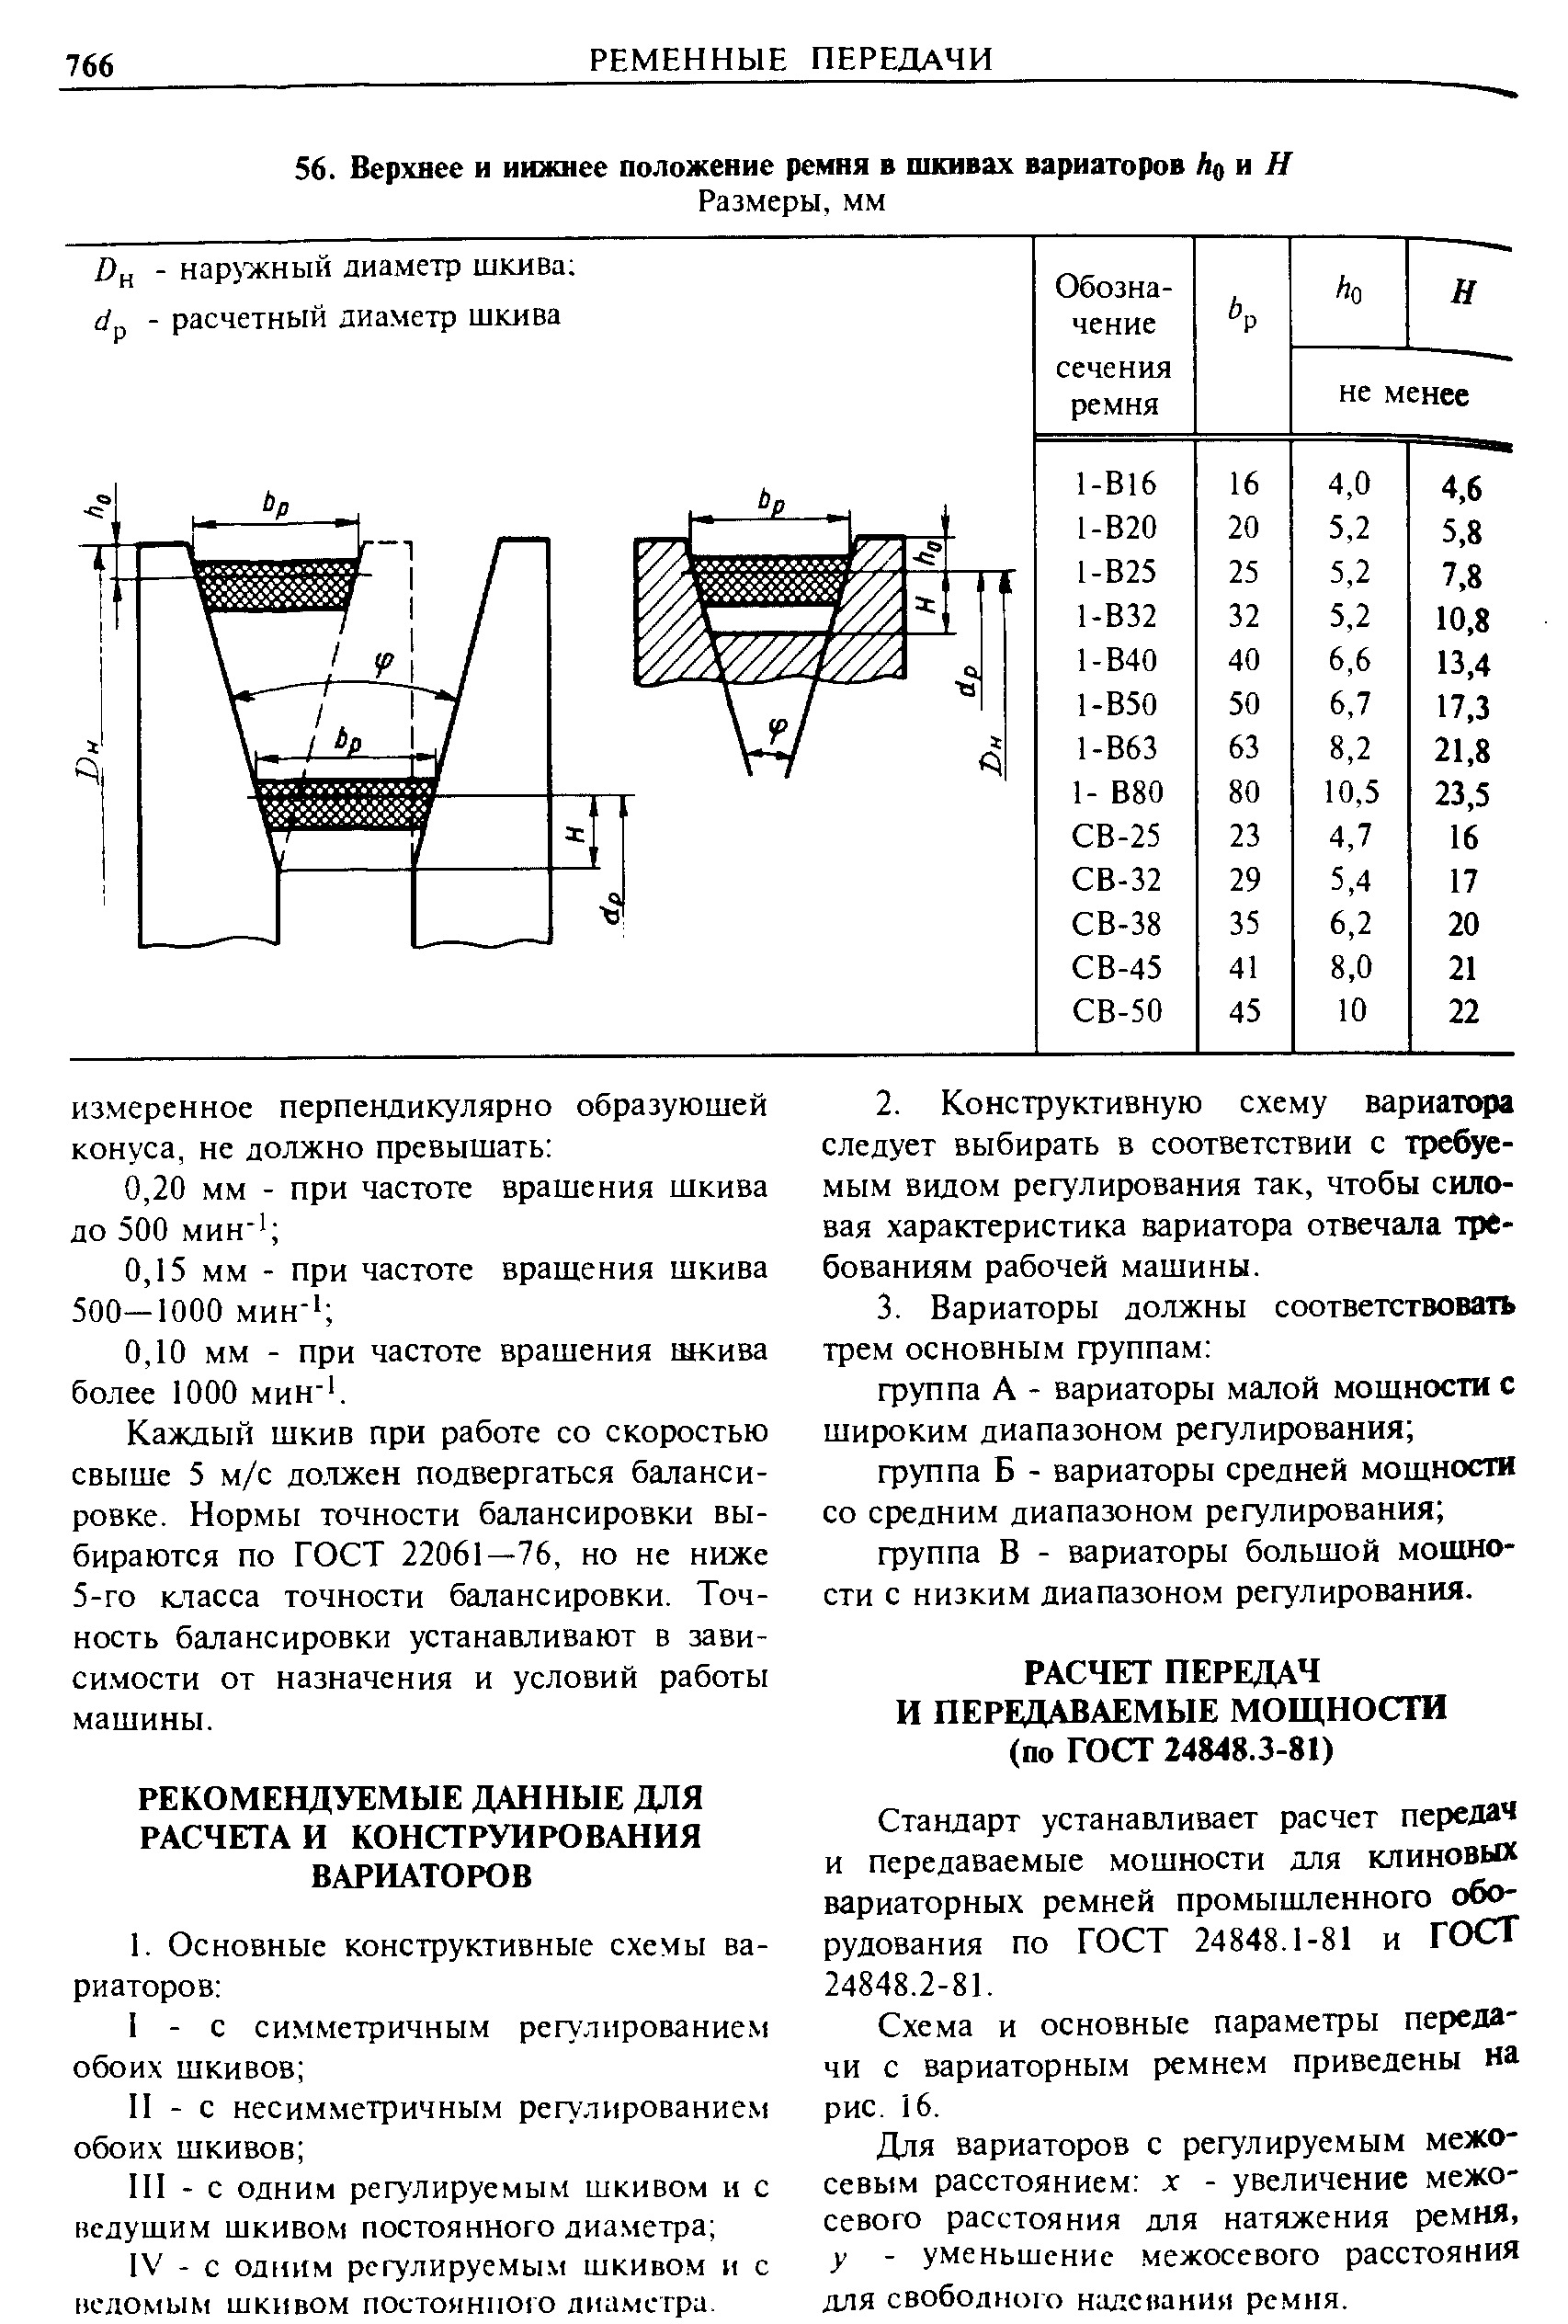 Схема и основные параметры переда- чи с вариаторным ремнем приведены на рис. 16.